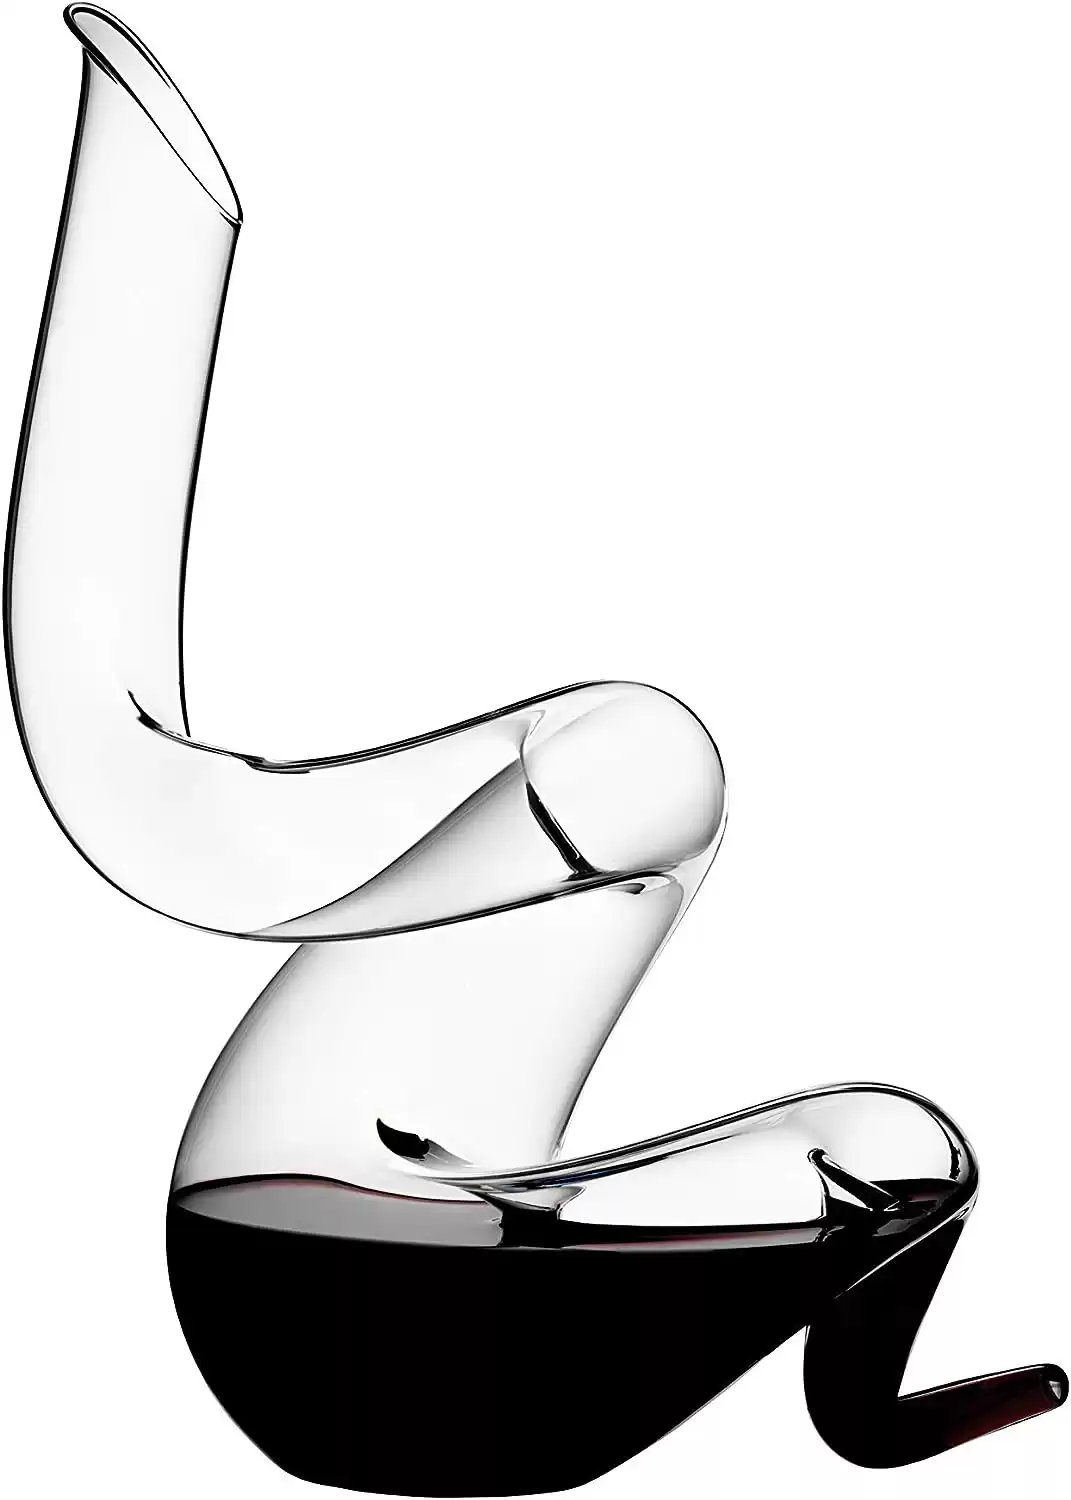 Riedel Boa Wine Decanter